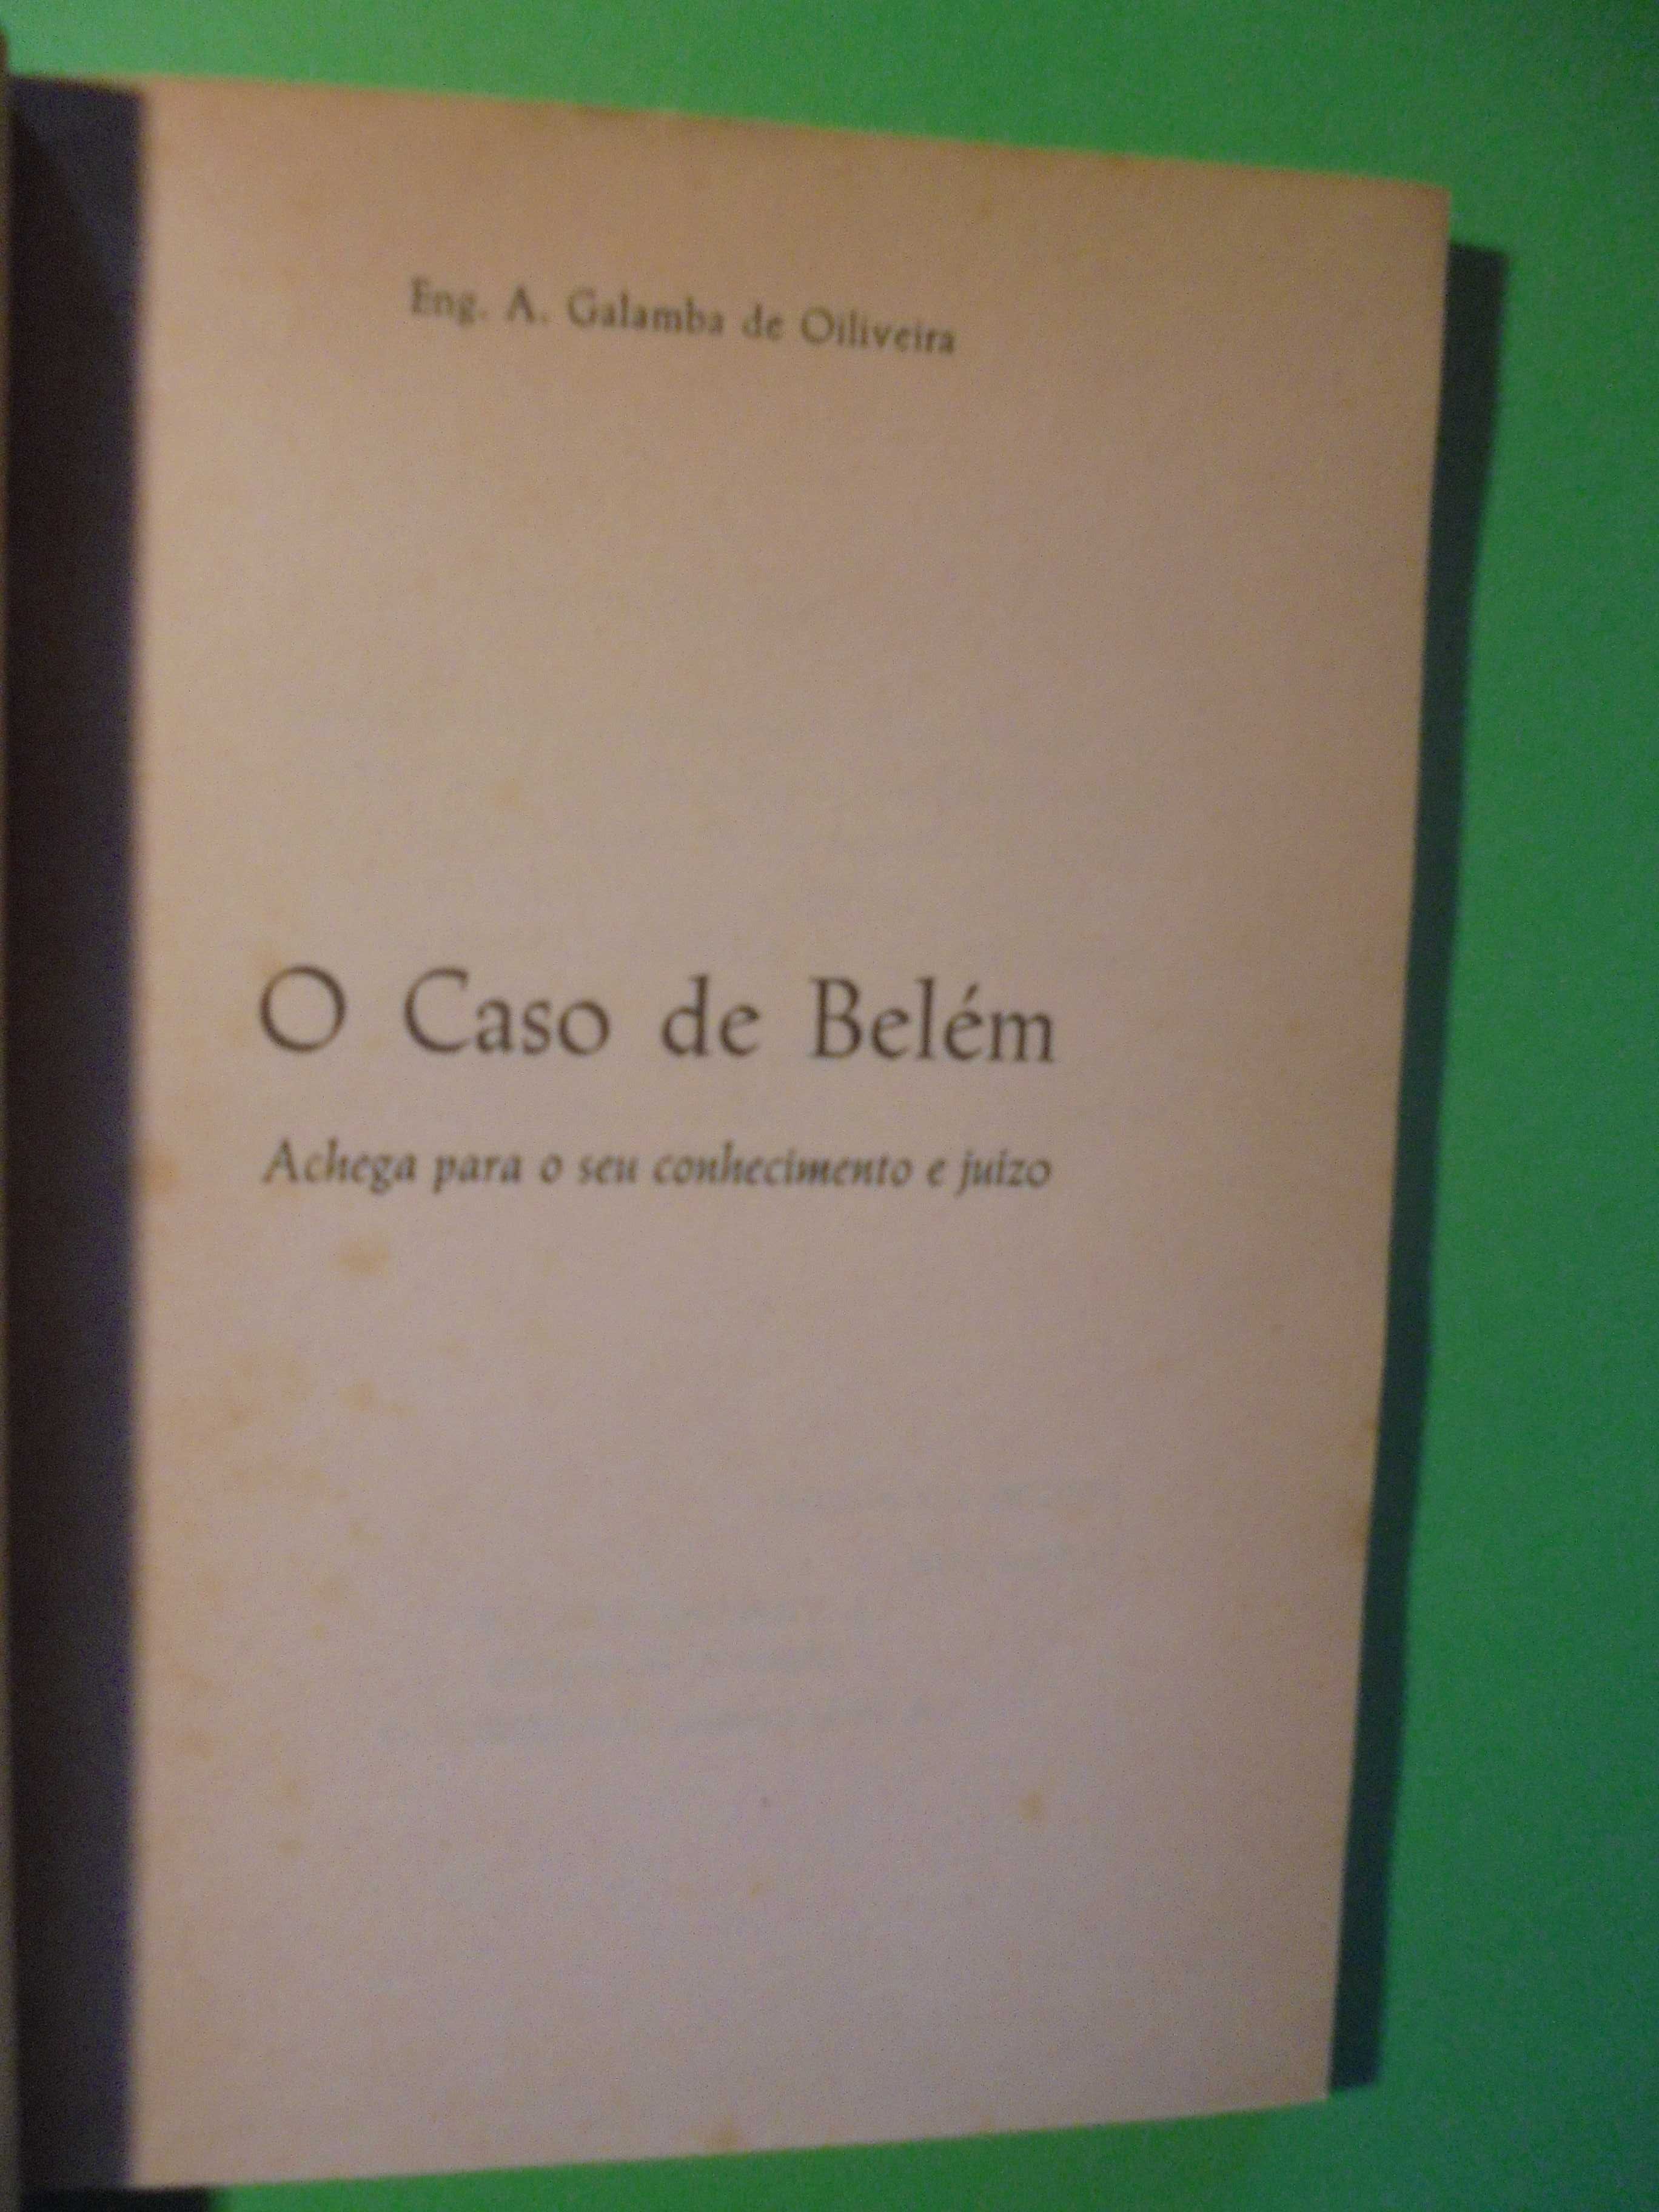 Oliveira (Anelo Galamba de);O Caso de Belém